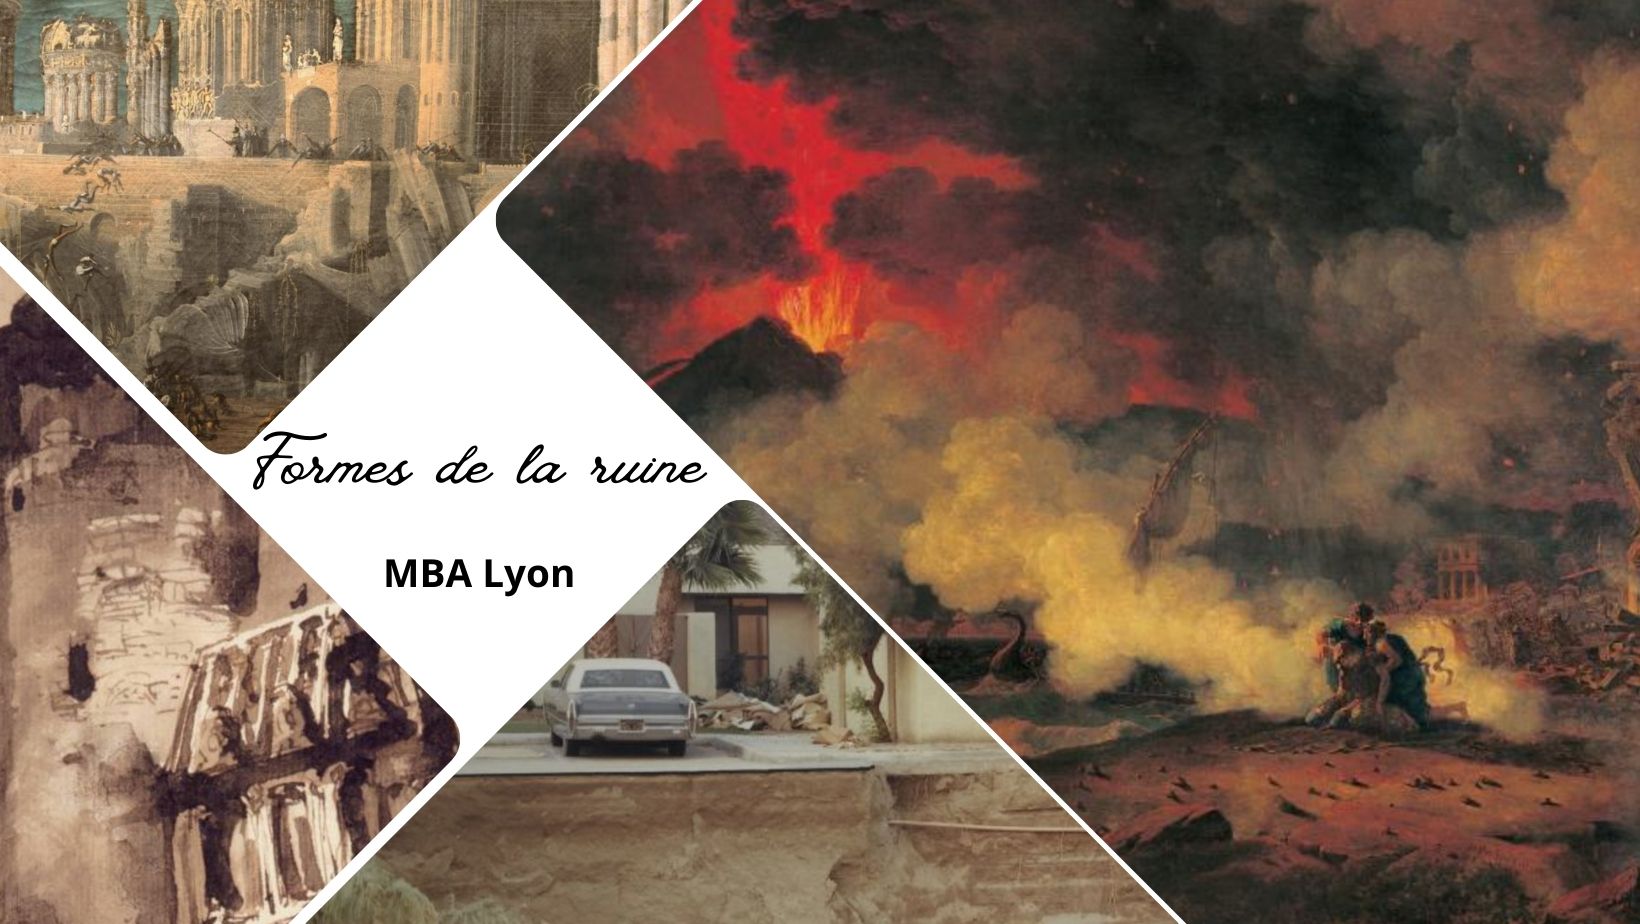 Exposition Formes de la ruine au Musée des Beaux-Arts de Lyon : plus dure sera la chute